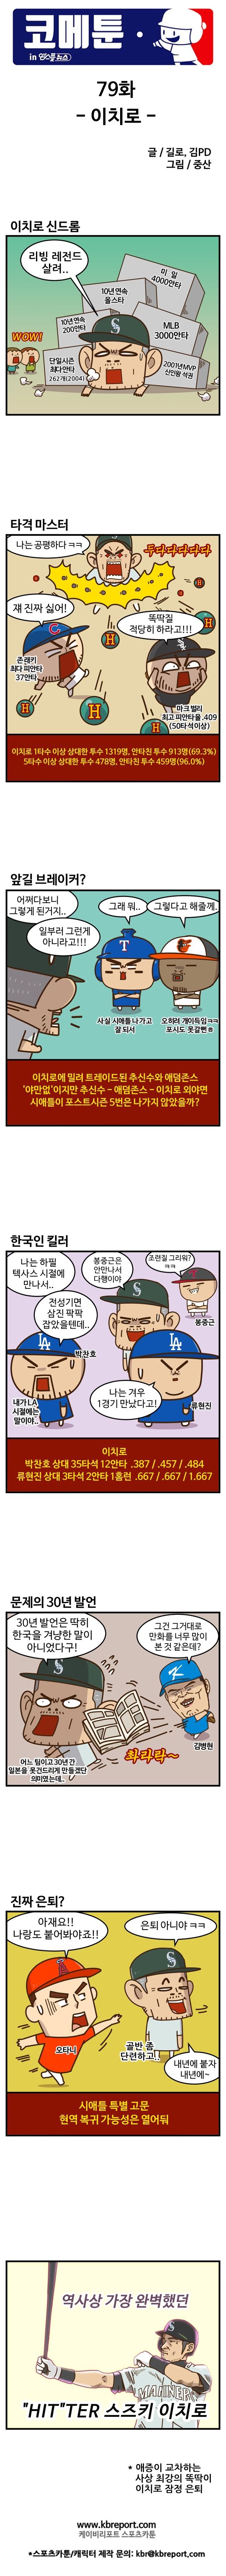 출처: [MLB 코메툰] '사상 최강' 똑딱이 이치로, 이젠 안녕?